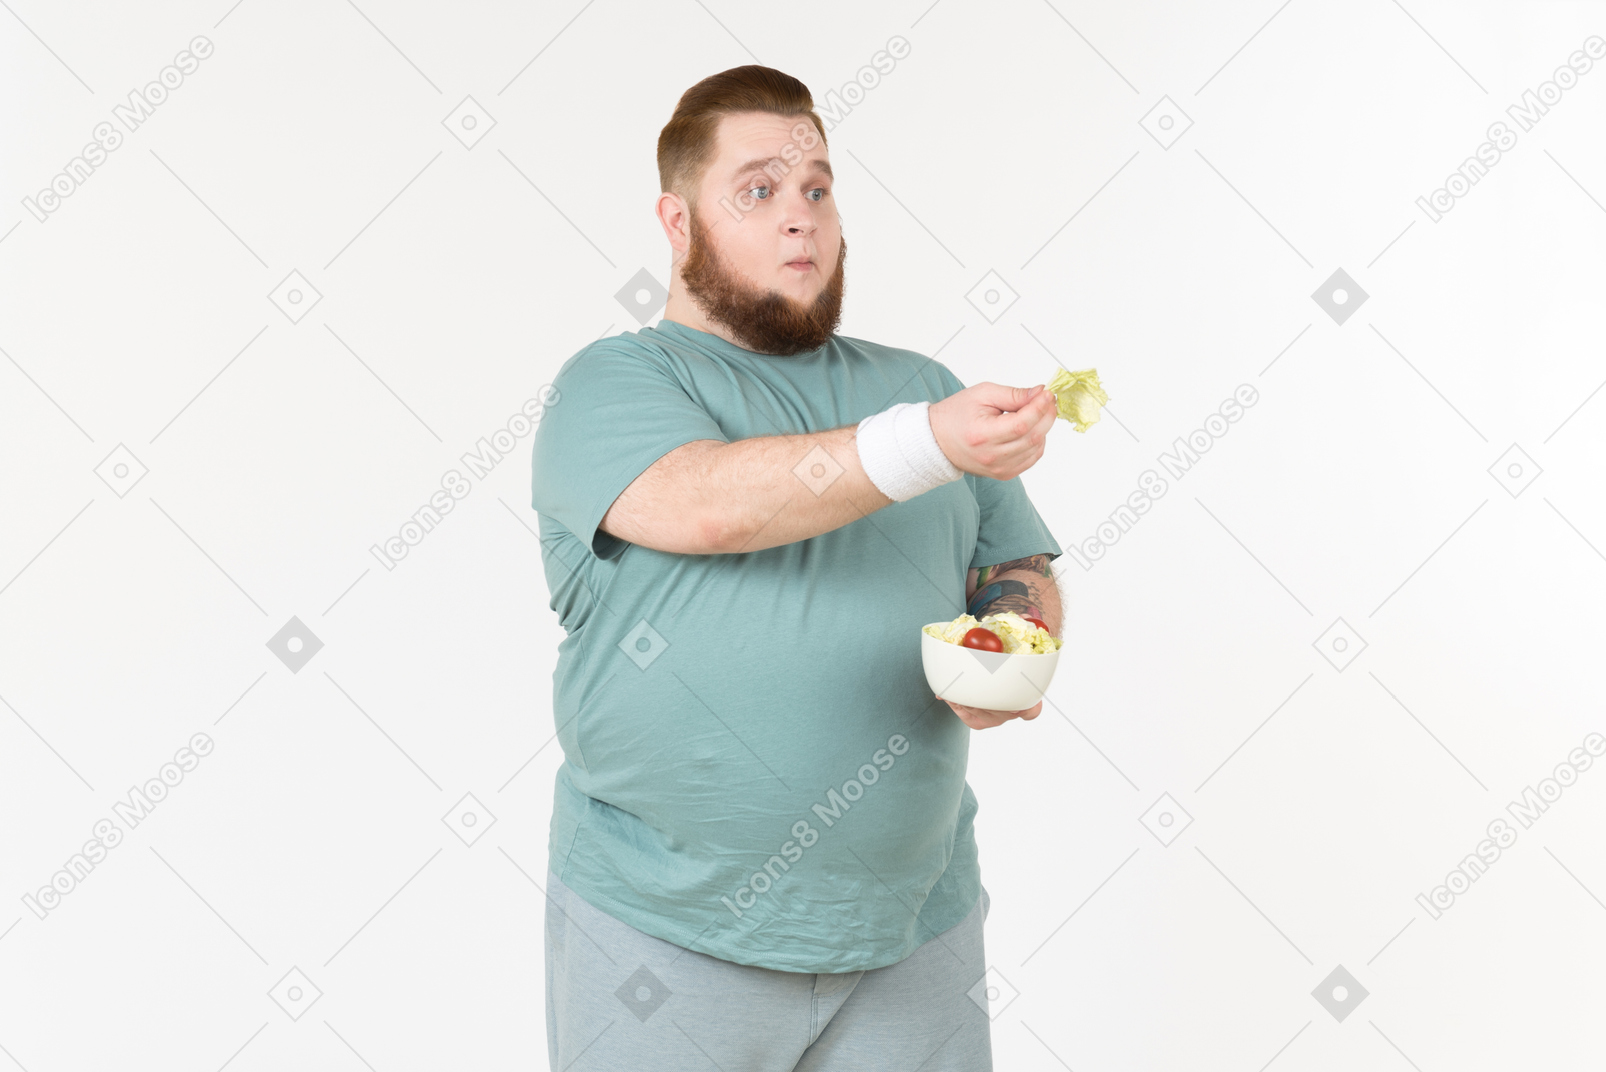 Big guy in sportswear handling salad leaves